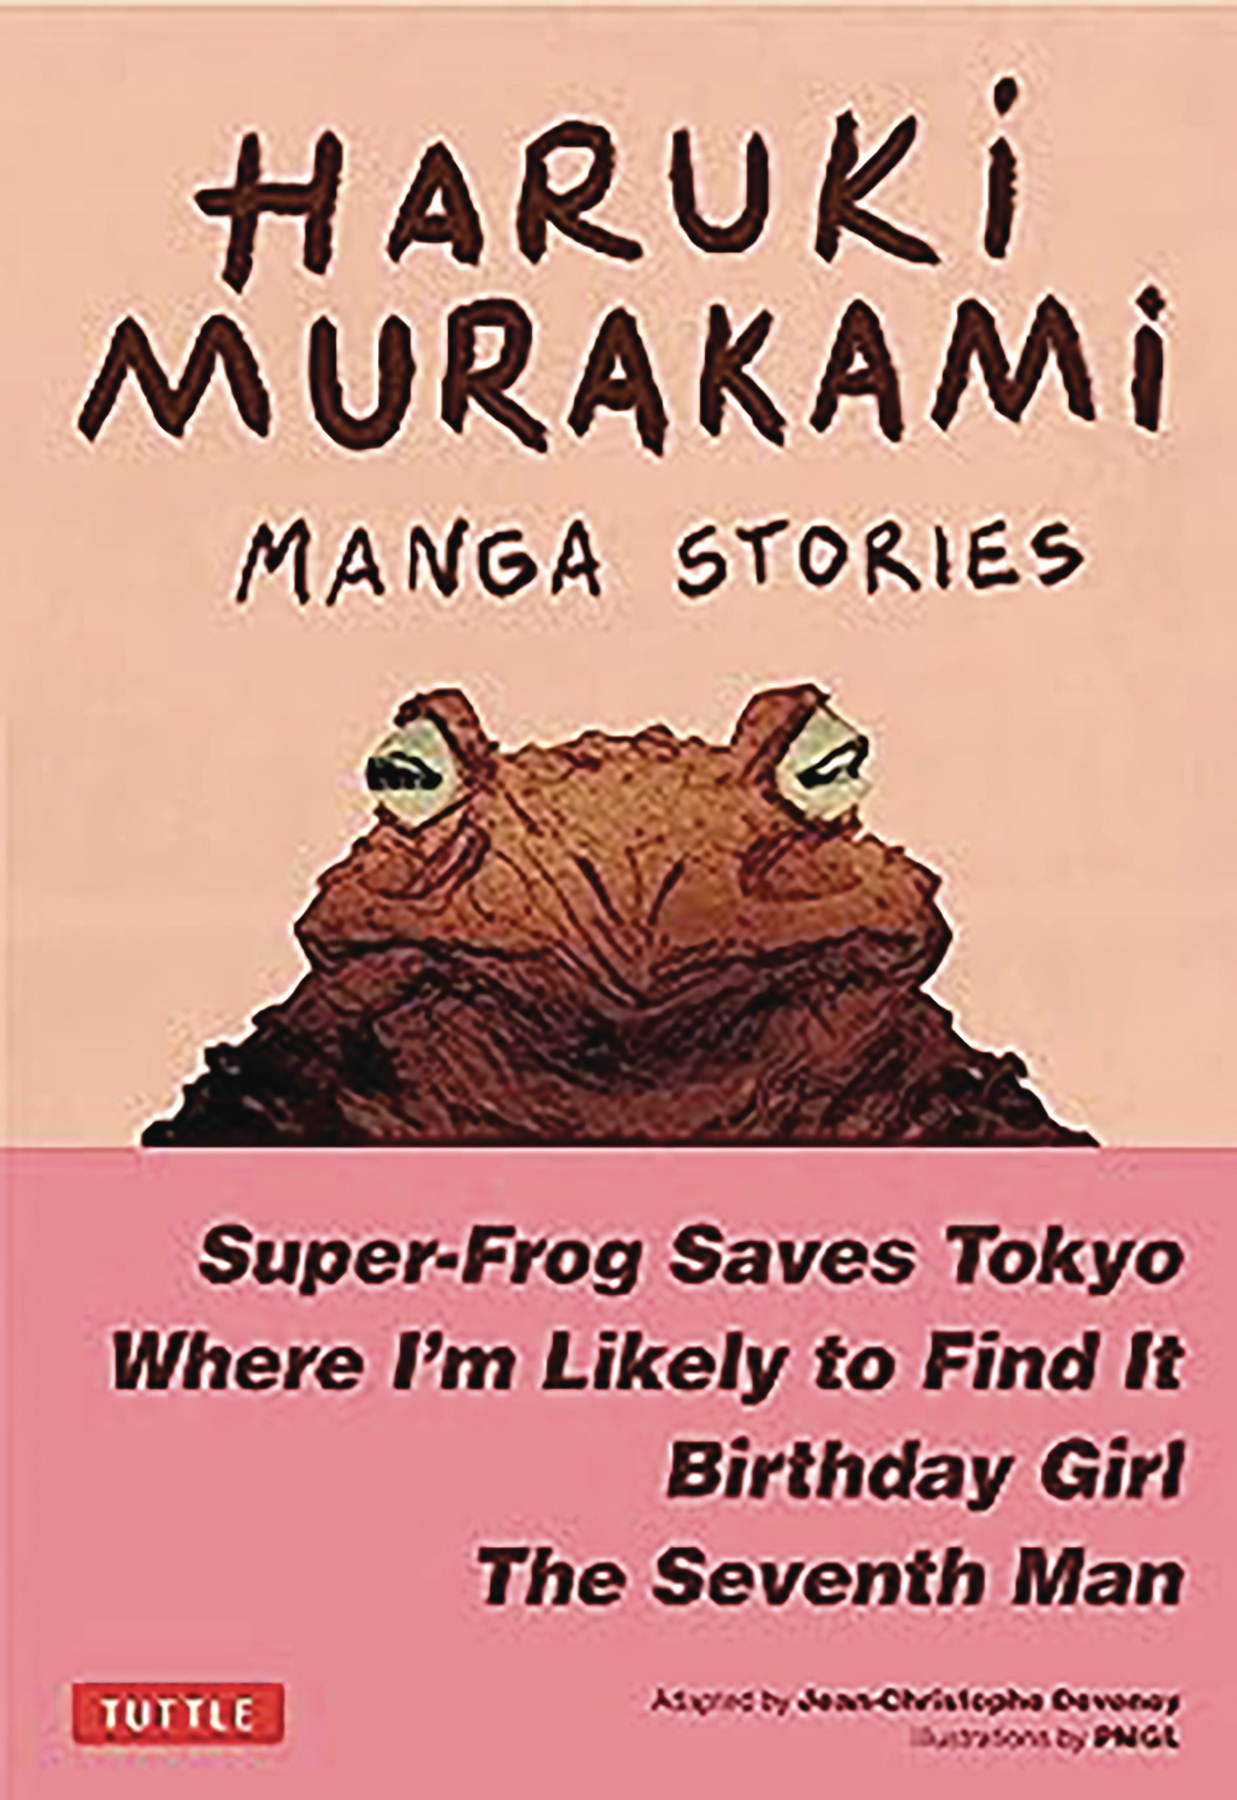 Haruki Murakami Manga Stories Hardcover Volume 1